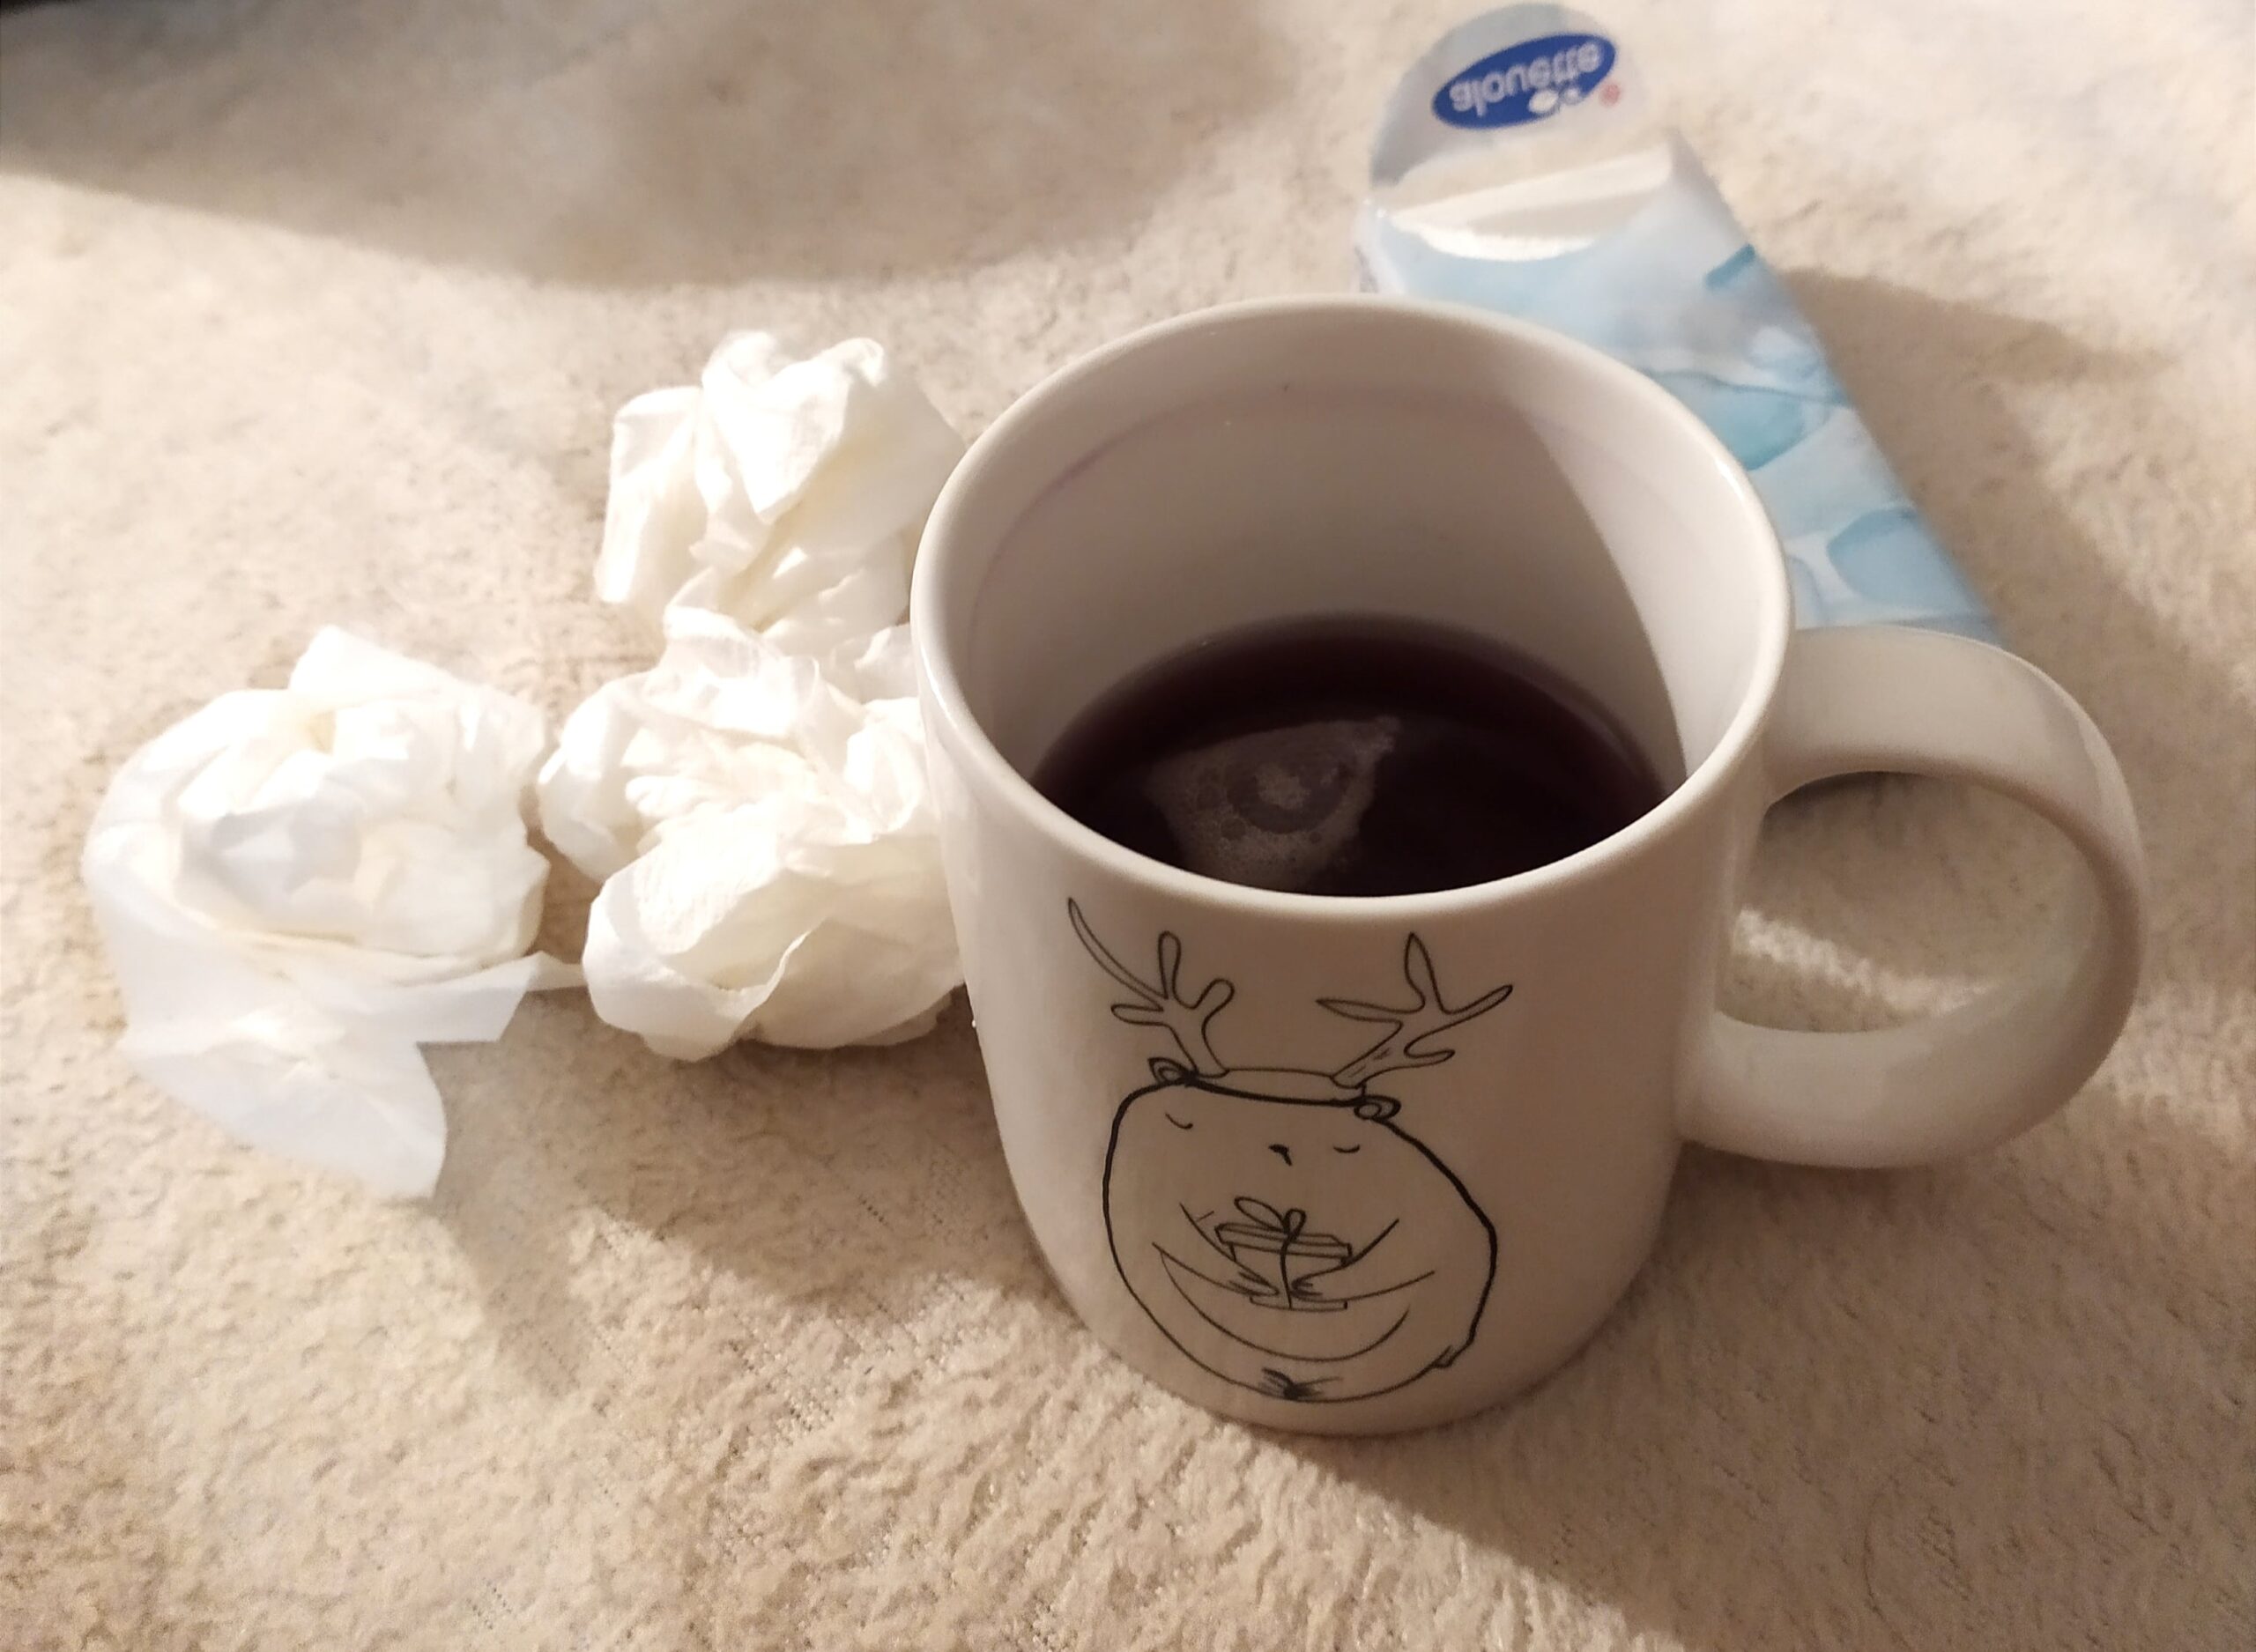 kubek z herbatą i chusteczki higieniczne